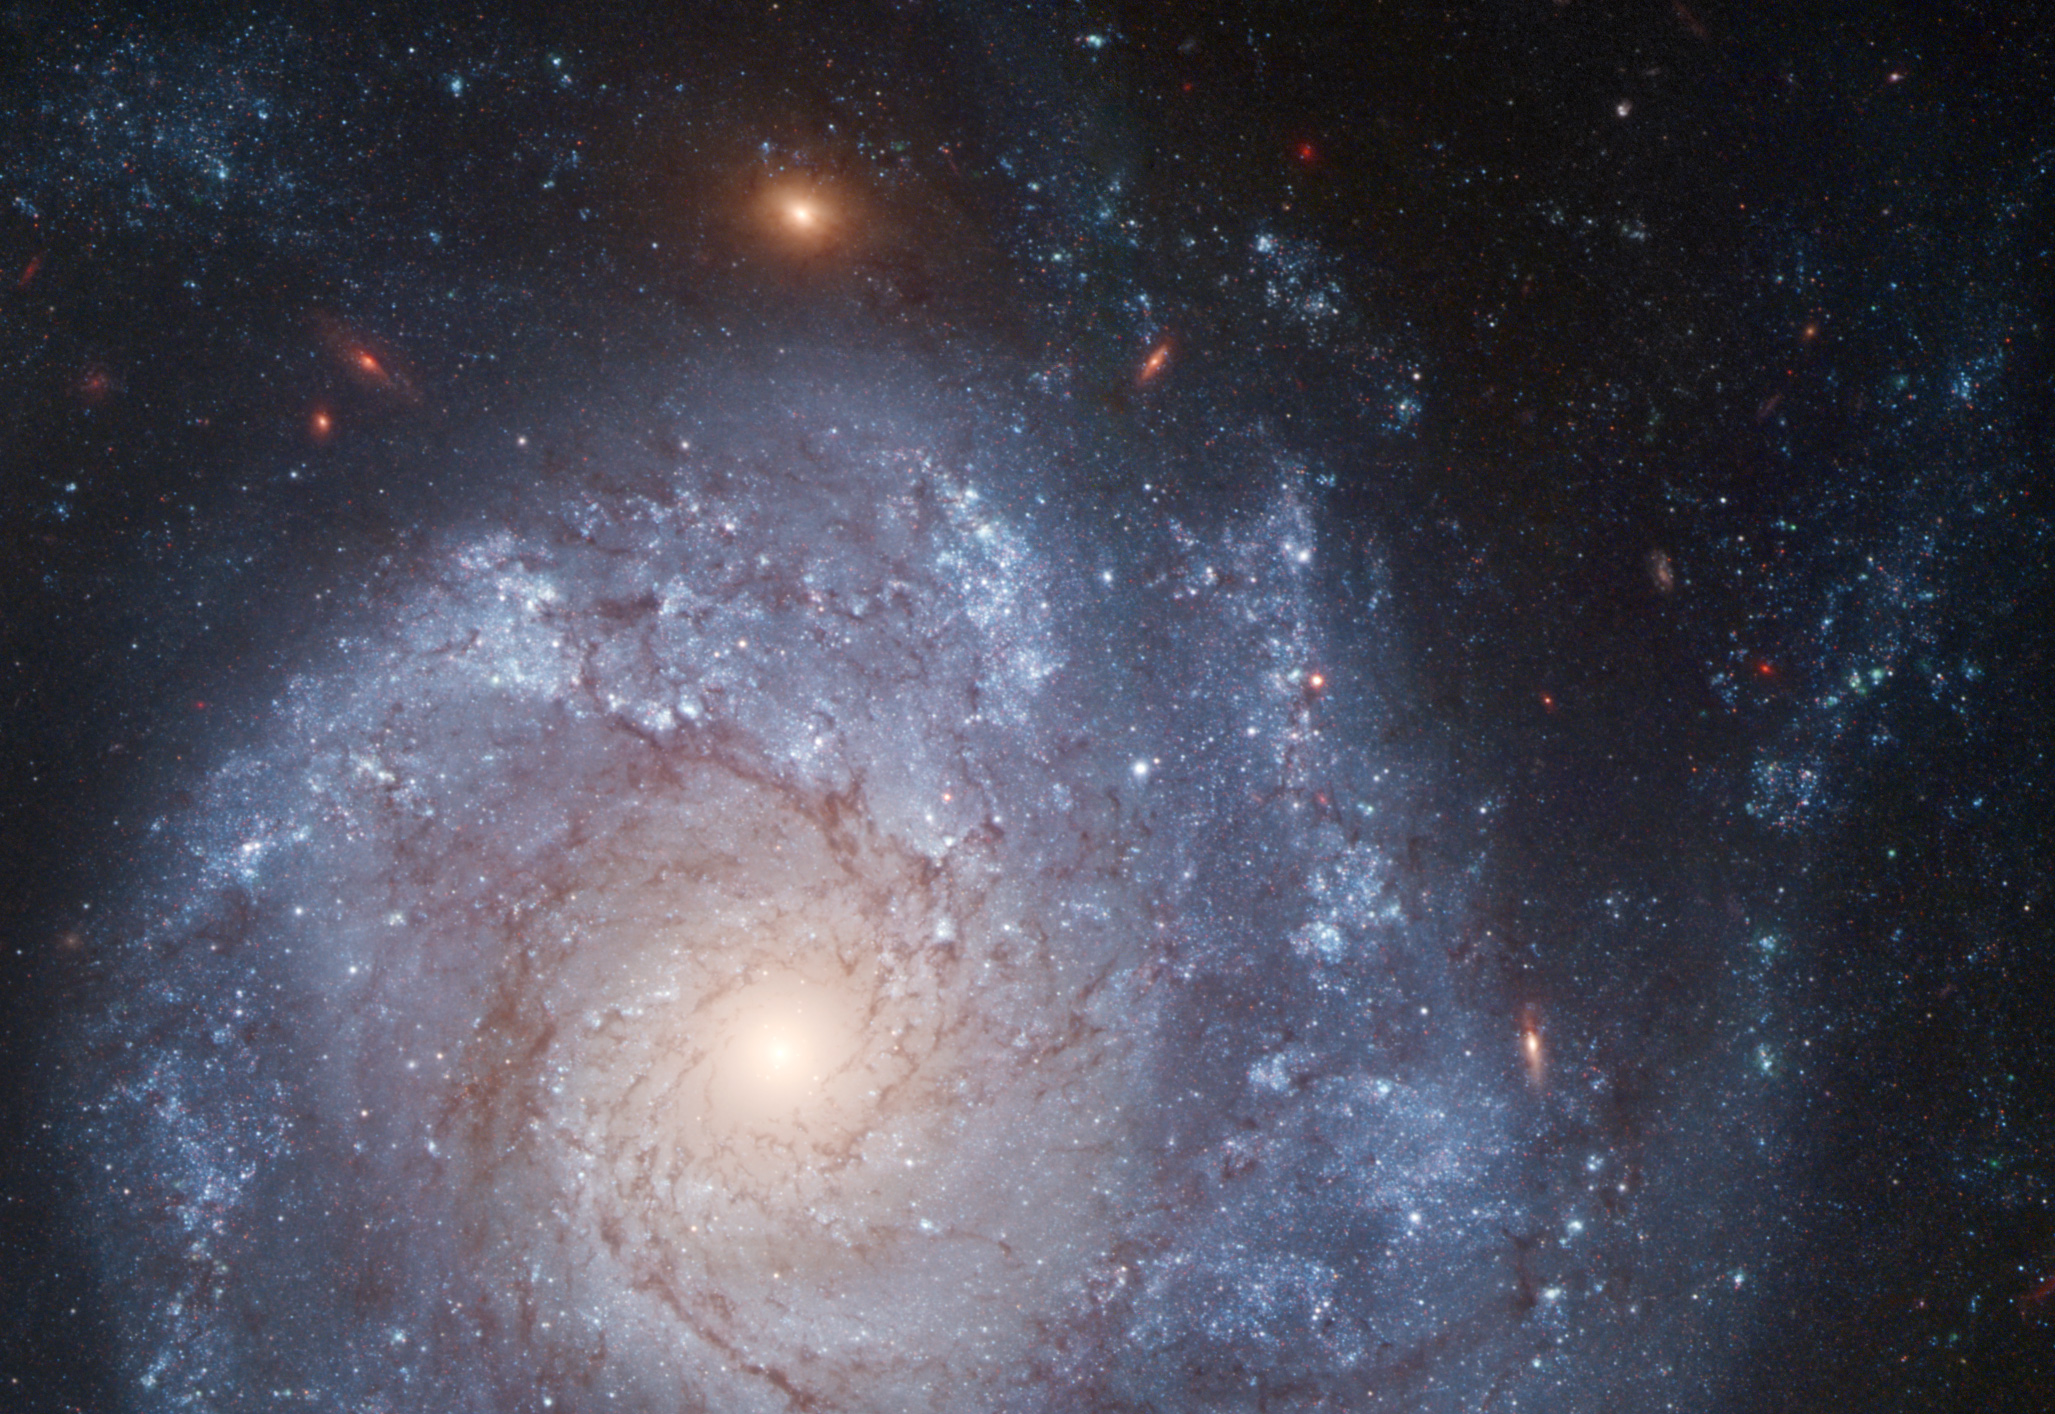 La galaxie spirale NGC 1309 vue par Hubble en fausses couleurs. Elle se trouve à environ 120 millions d'années-lumière de la Voie lactée.&nbsp;© Nasa, Esa